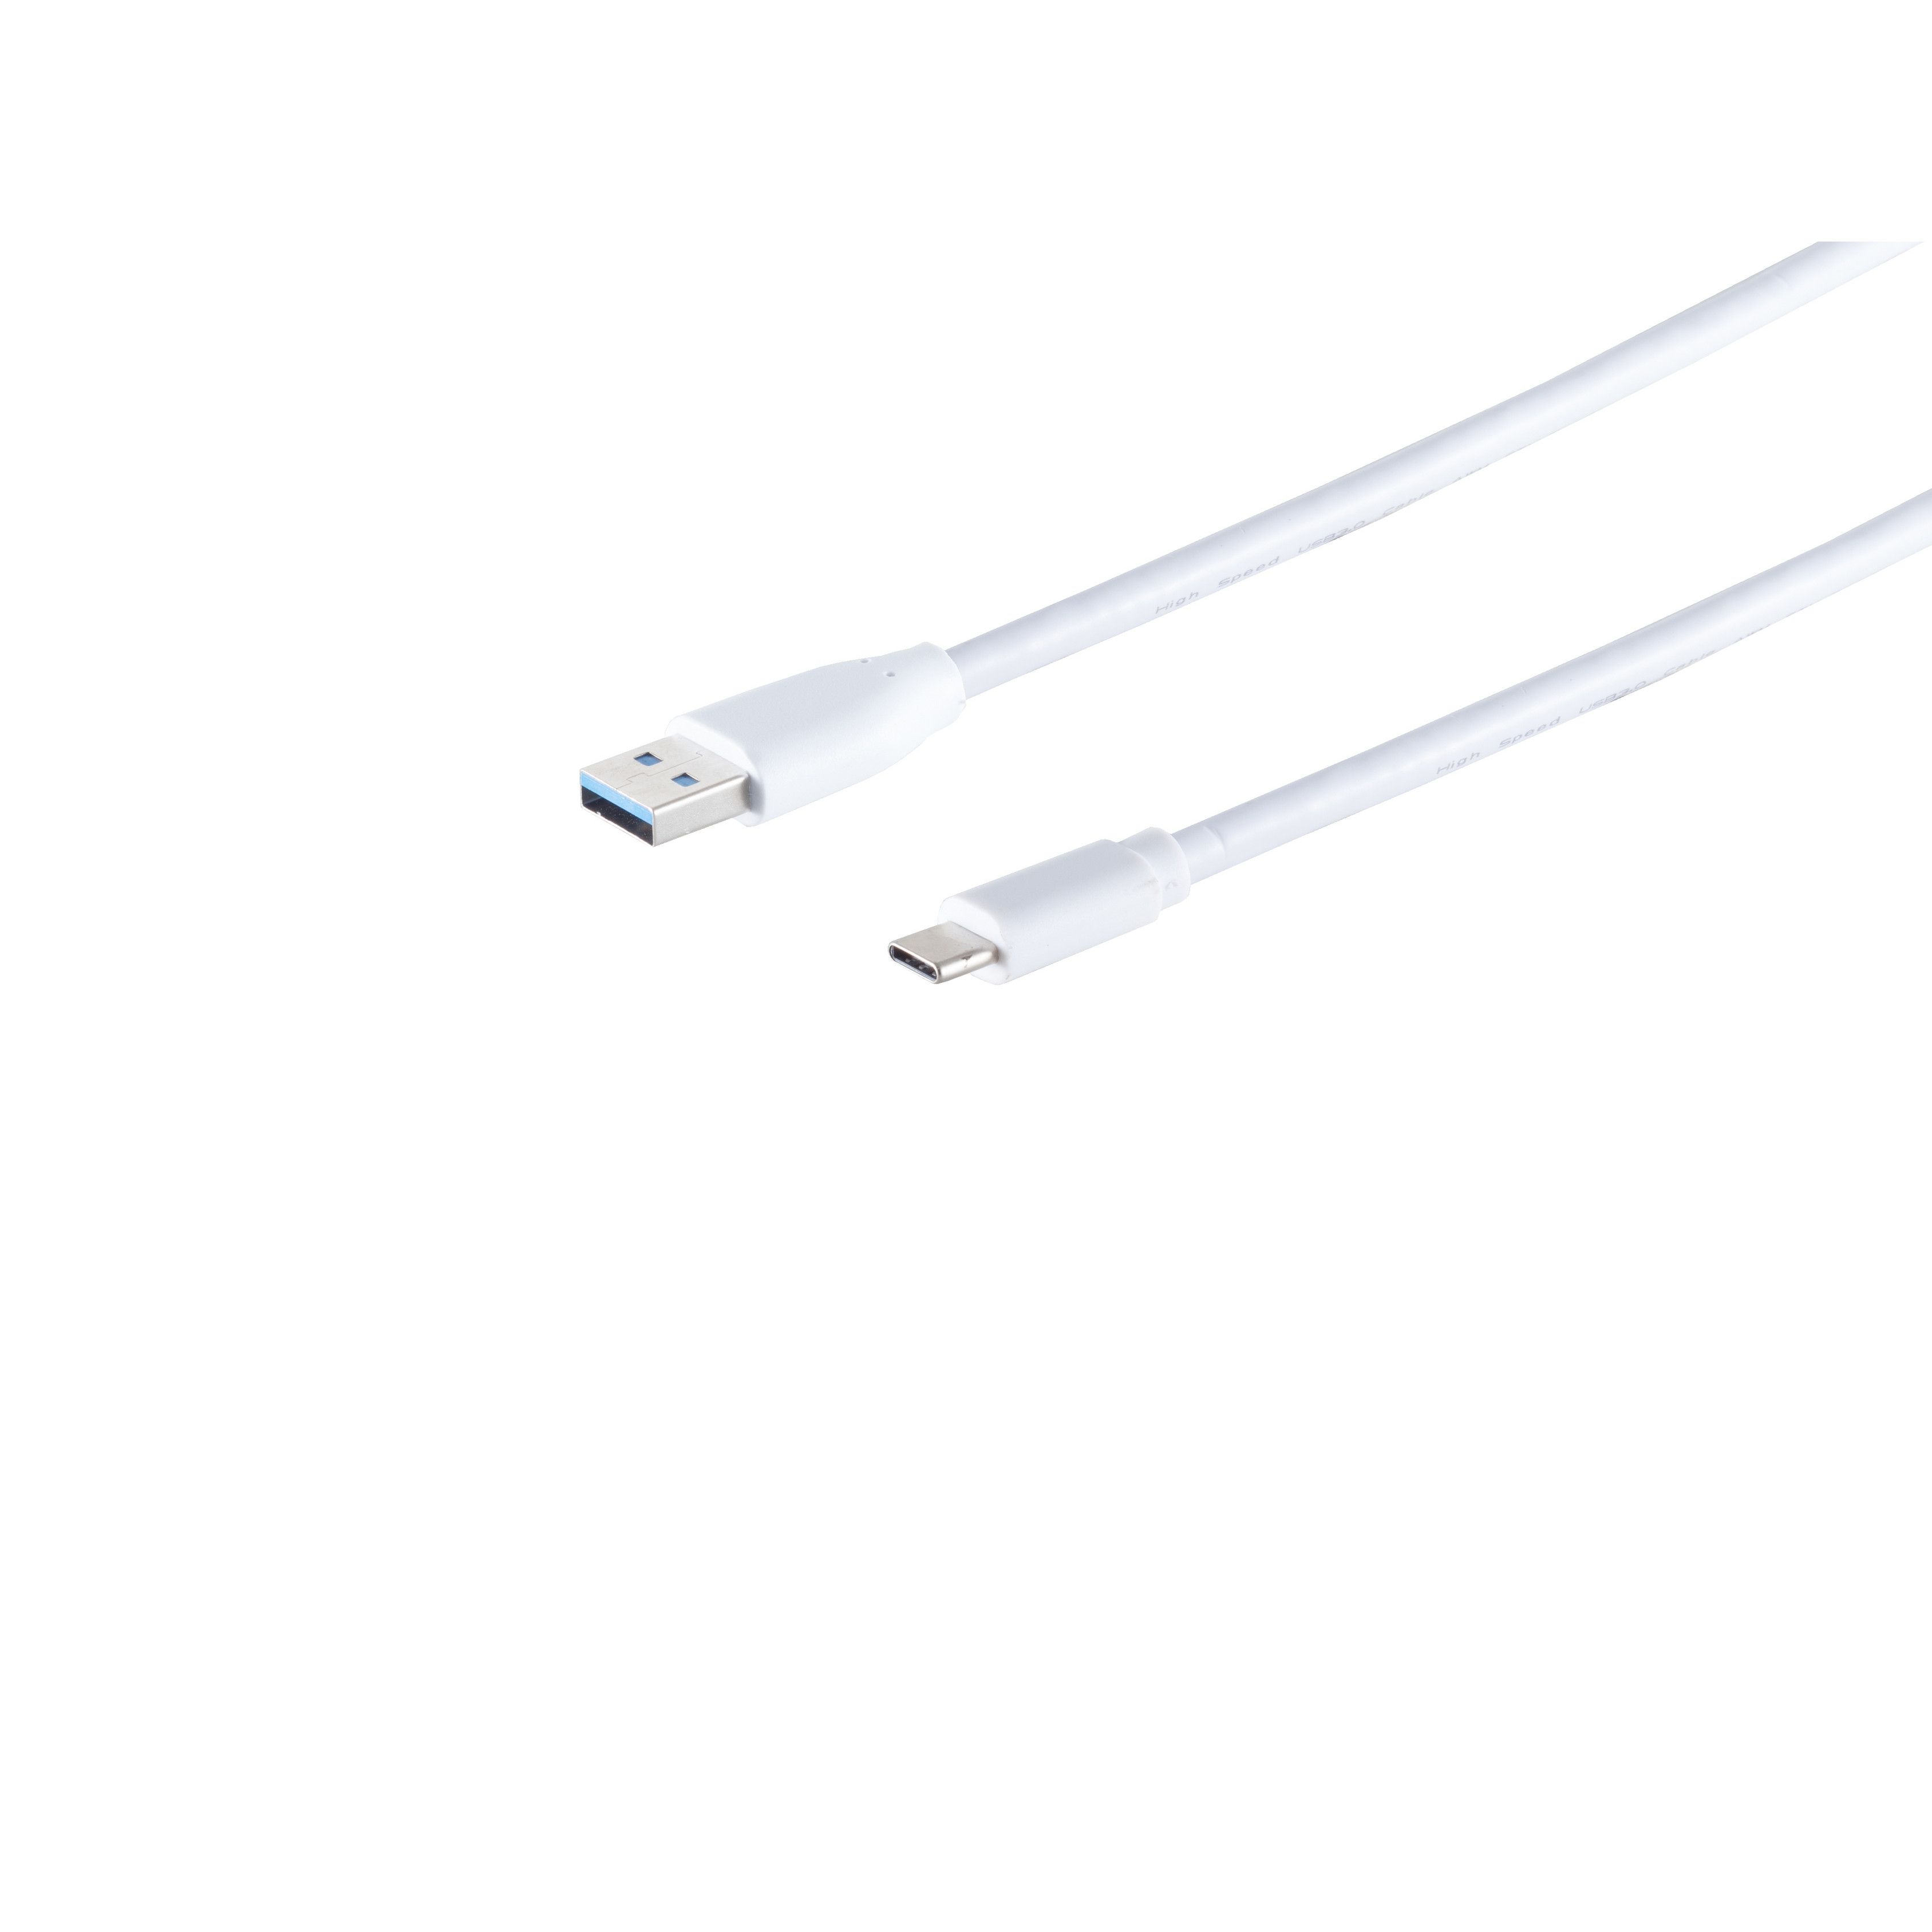 KABELBUDE USB Kabel 3.0 1,8m weiß Stecker-USB Stecker Kabel A 3.1C USB